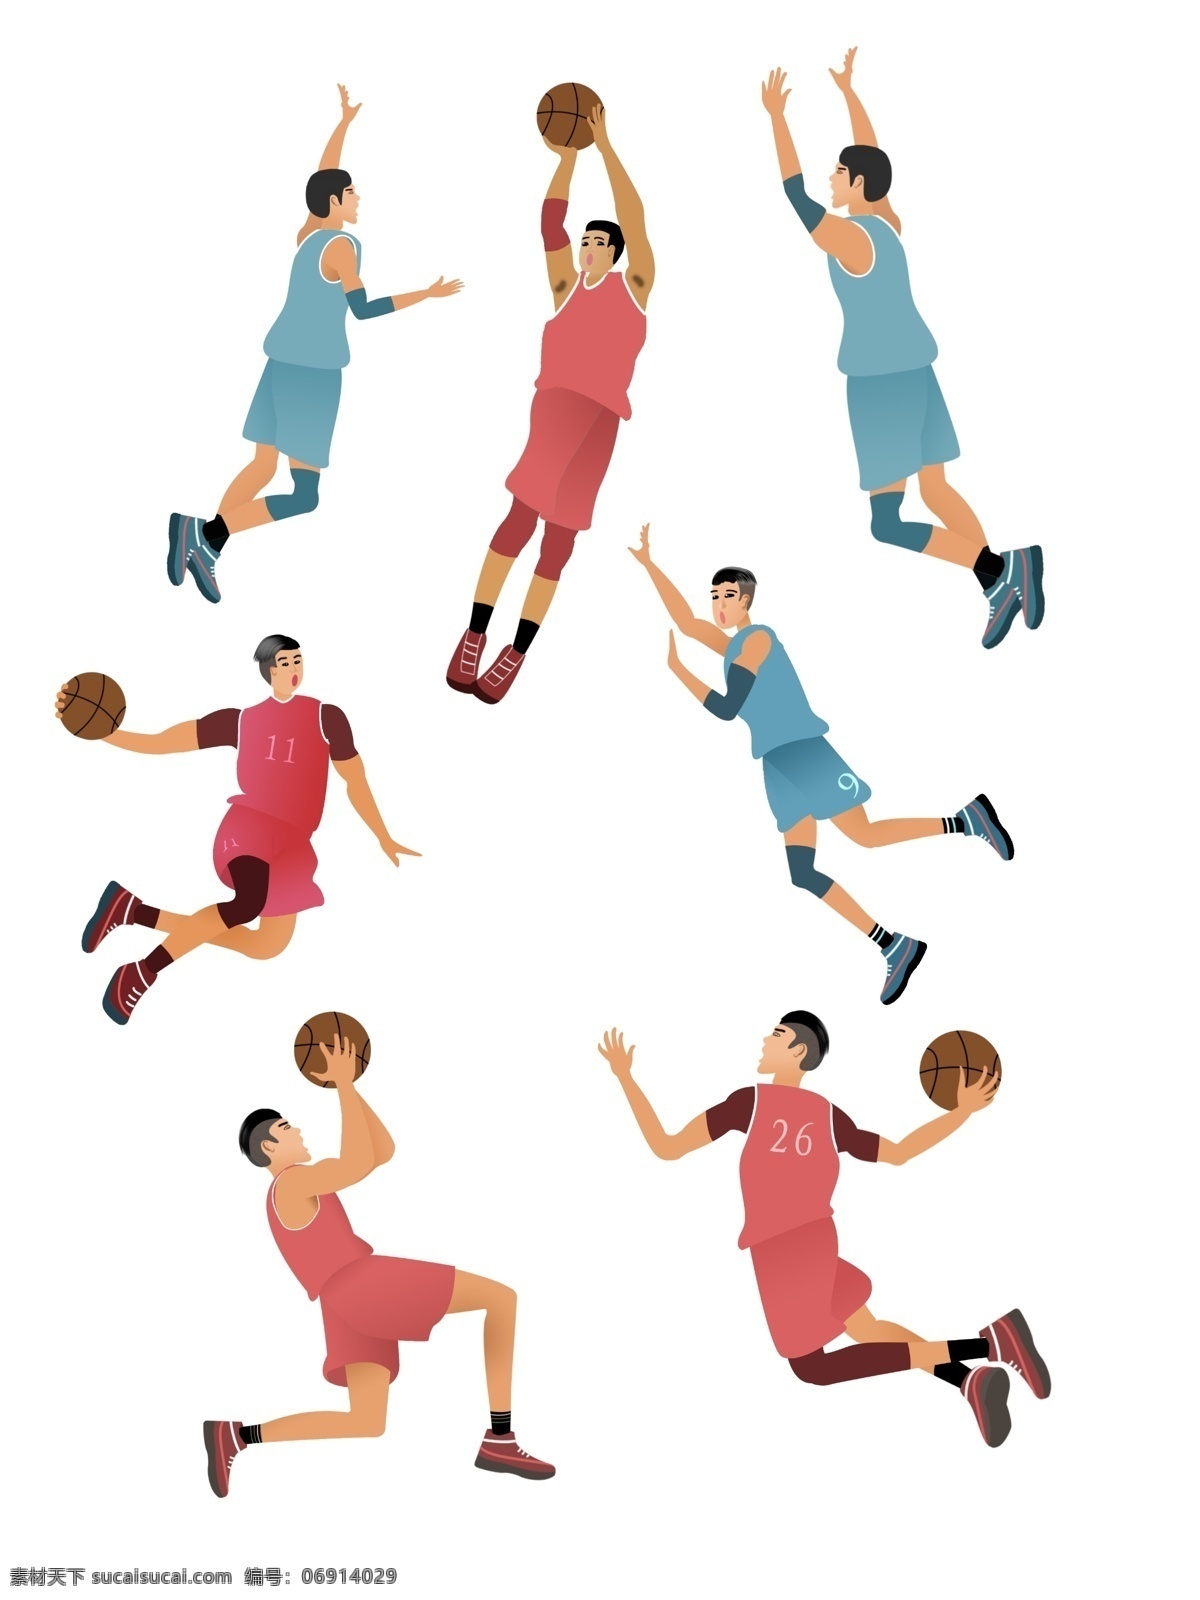 国际 篮球 日 球员 集合 卡通人物 篮球比赛 扣篮 飞人 国际篮球日